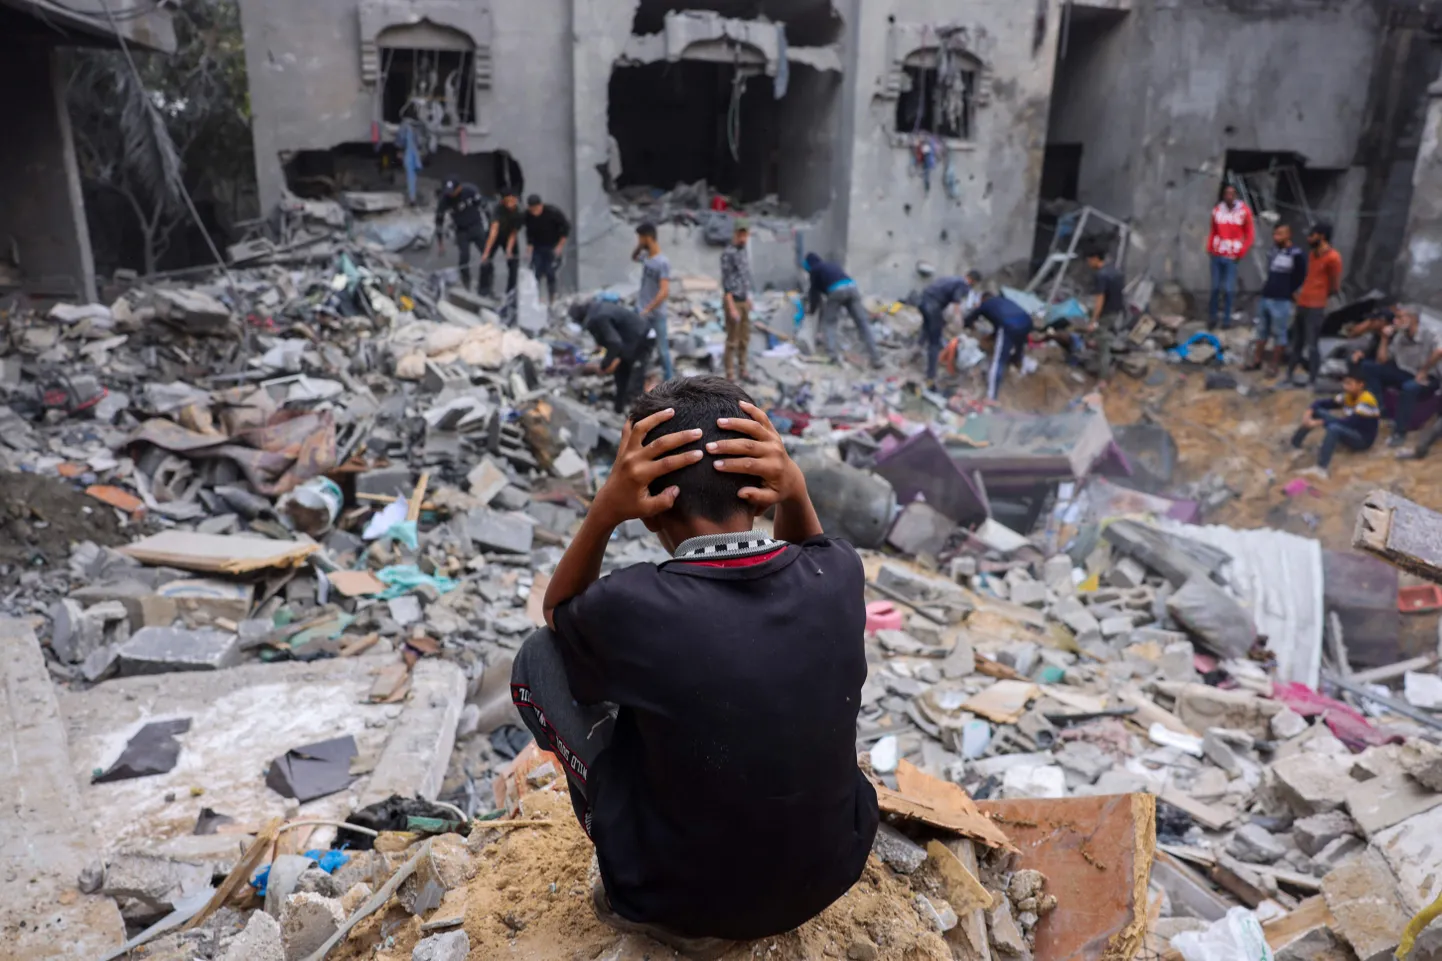 Laps vaatamas sõjapurustusi Gaza sektori lõunaosas asuvas Rafah linnas. Pilt on illustratiivne.